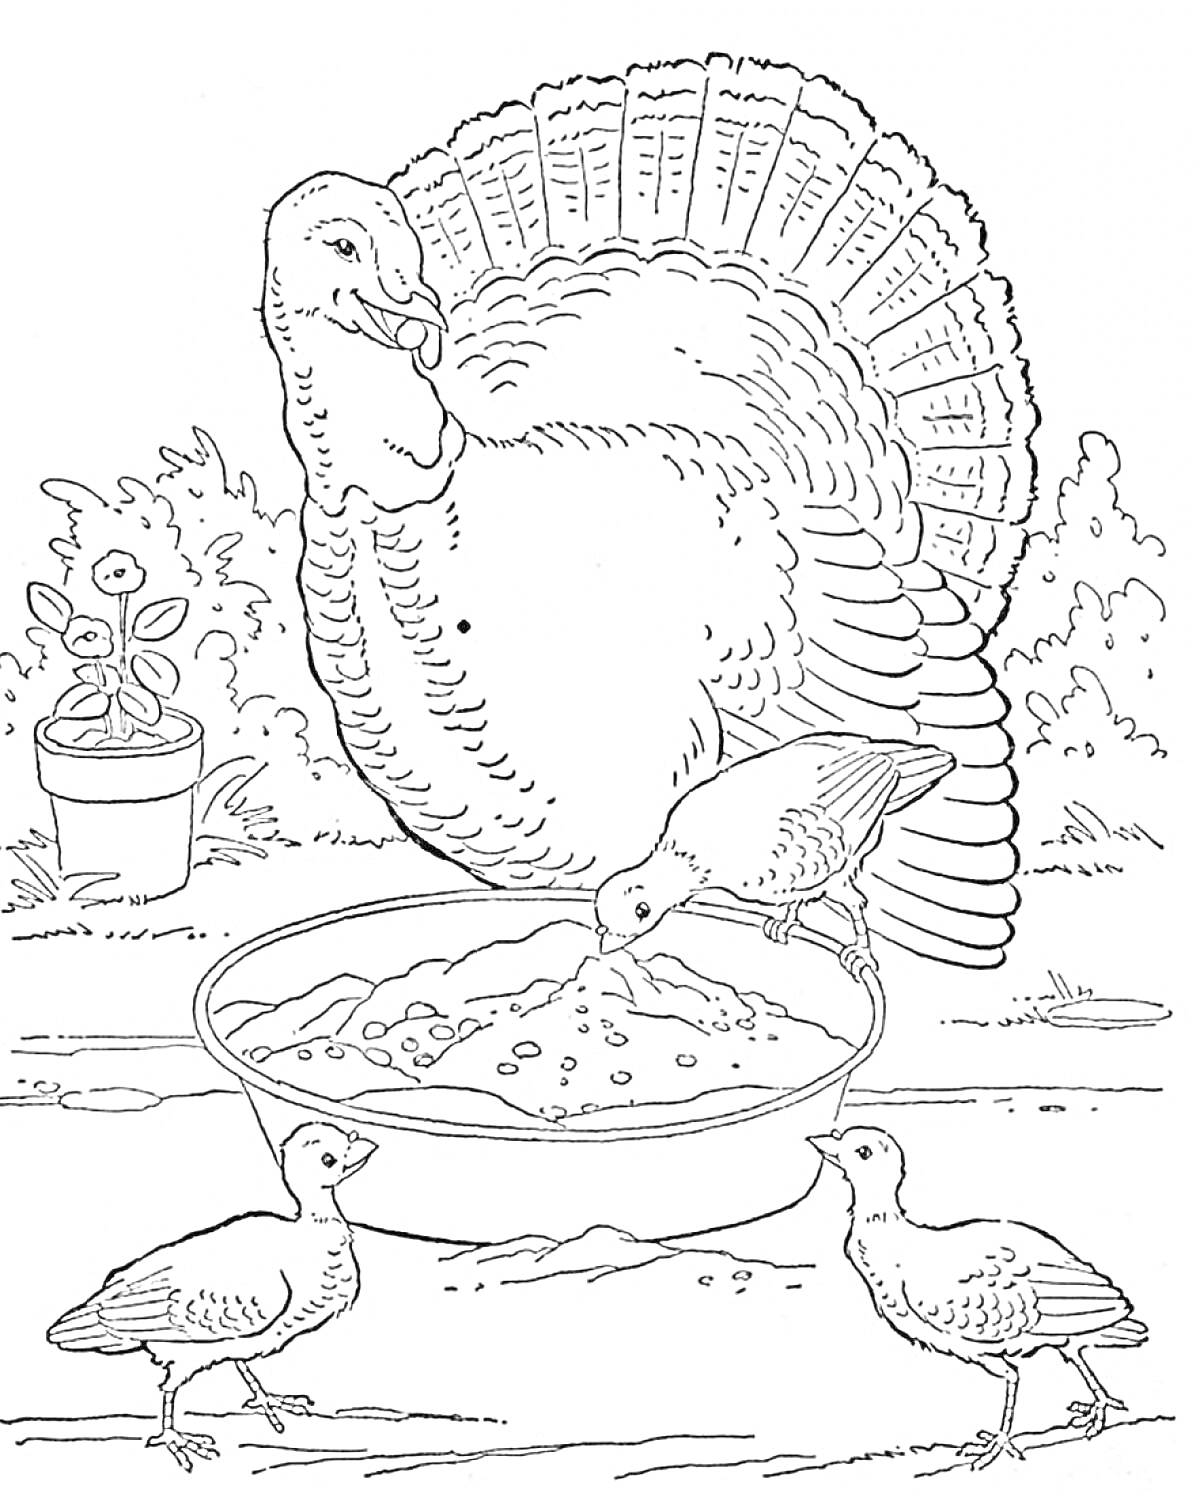 Раскраска Индюк и три птенца, питающиеся из миски, на фоне природы с горшком